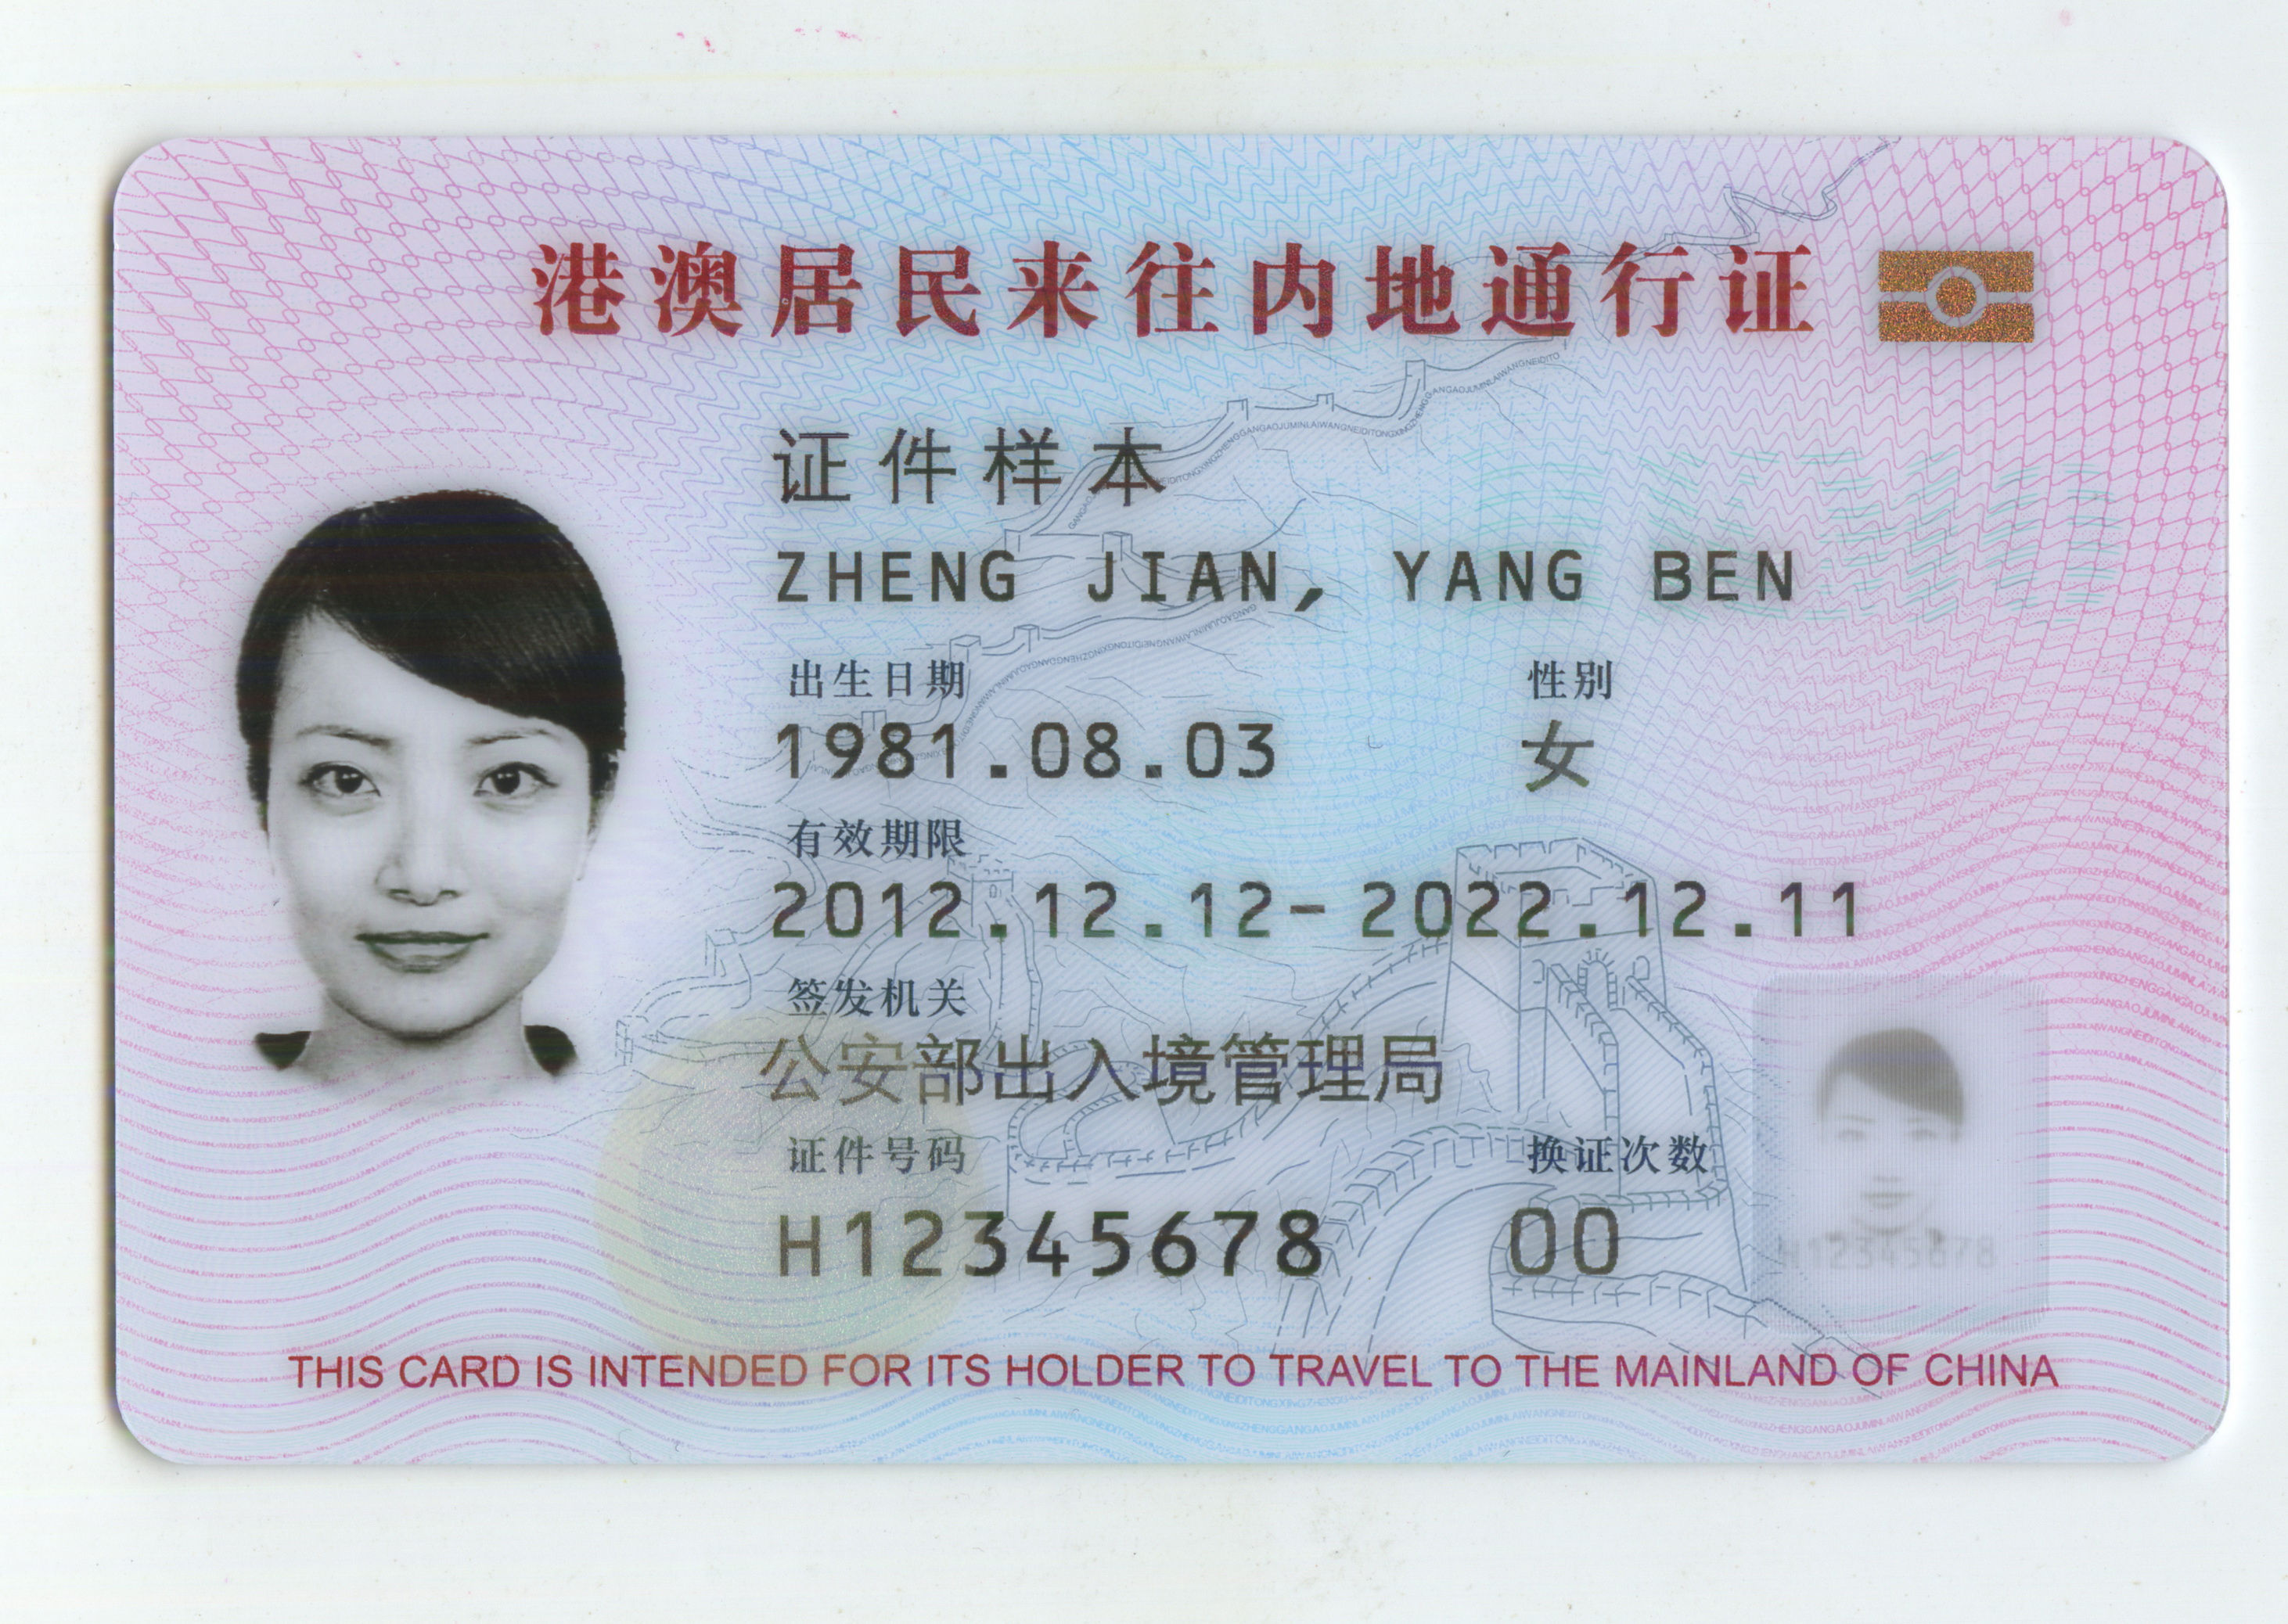 给你们看看台湾身份证是什么样的-大埔水库-大埔论坛 - 大埔网 514200.com